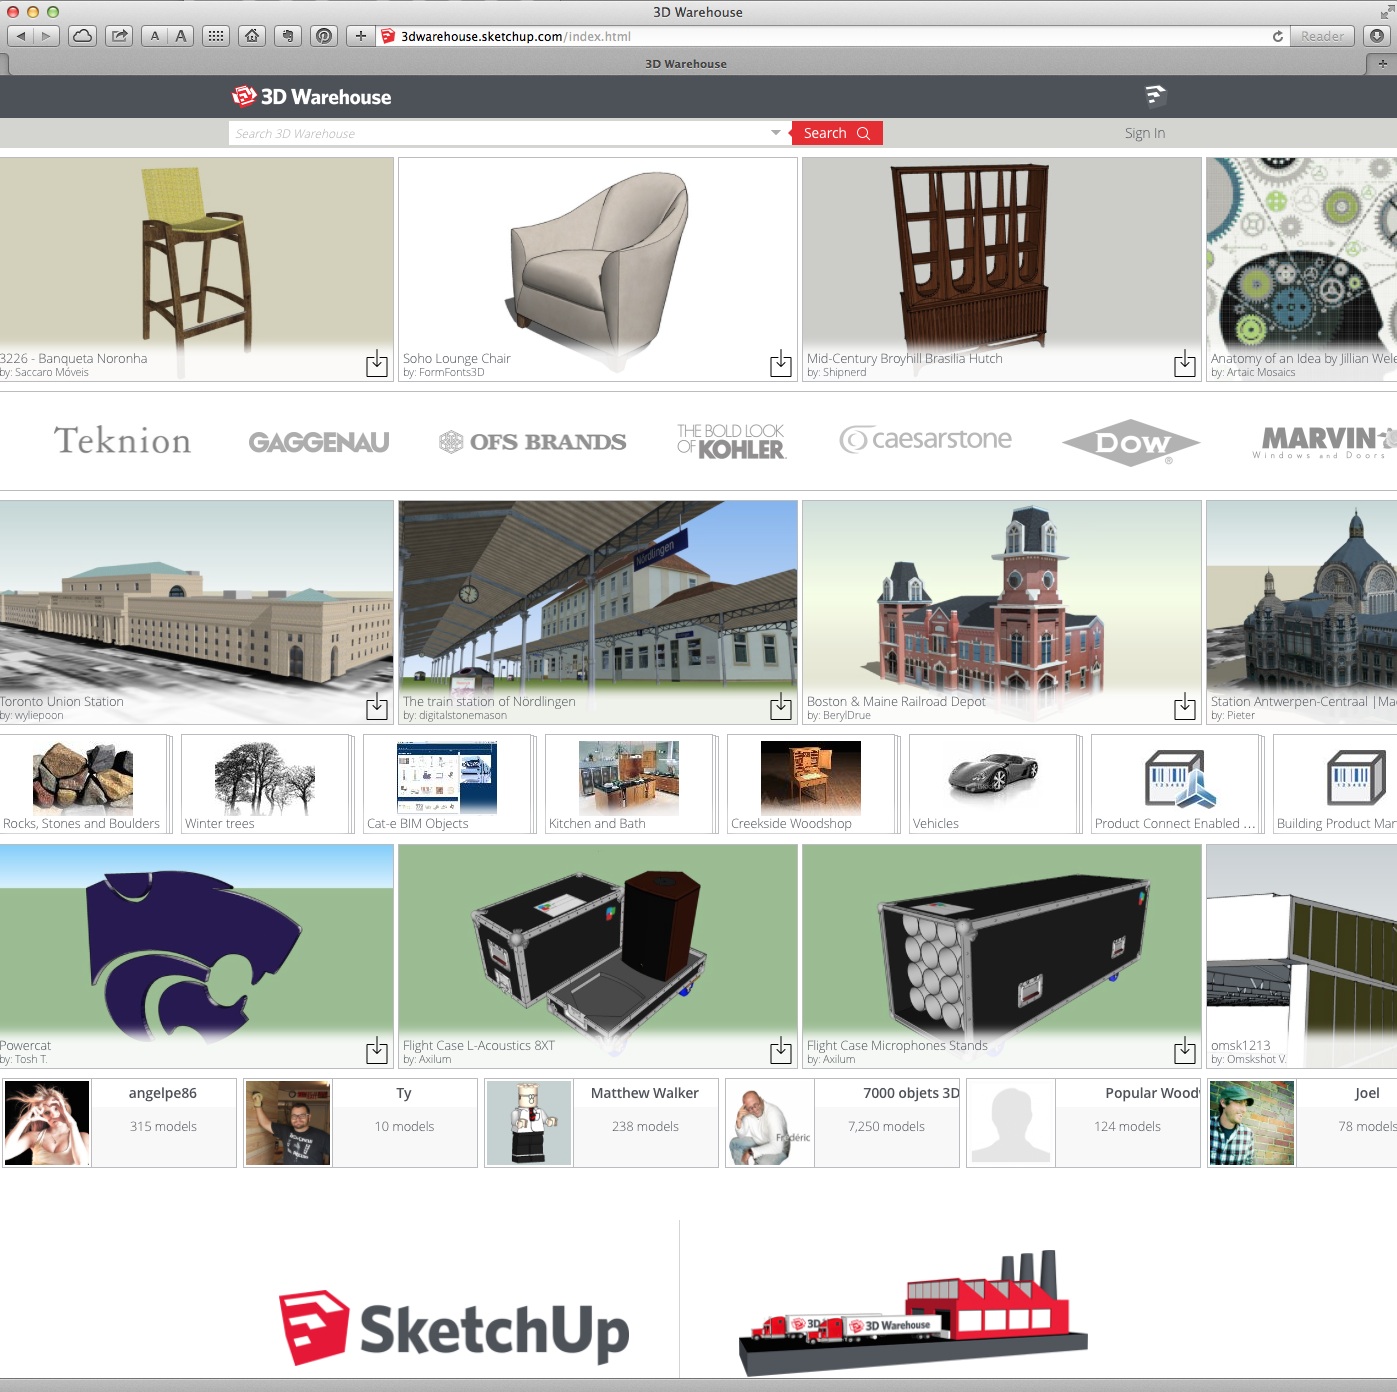 Trimble Announces Enhancements to SketchUp’s 3D Warehouse | Architosh